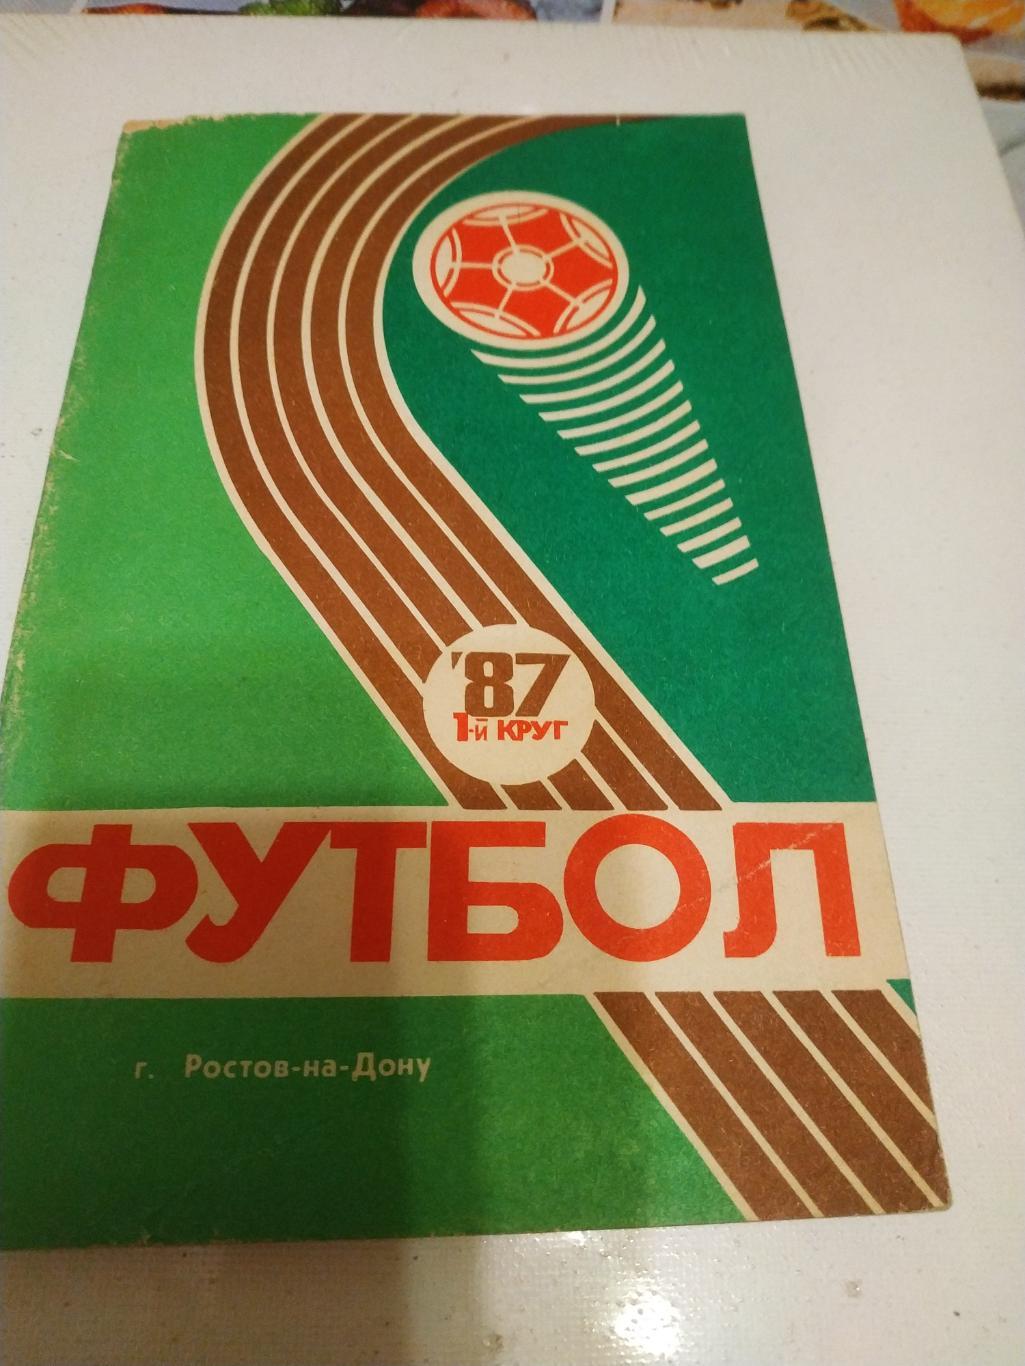 Ростов на Дону 1987 -1 Круг